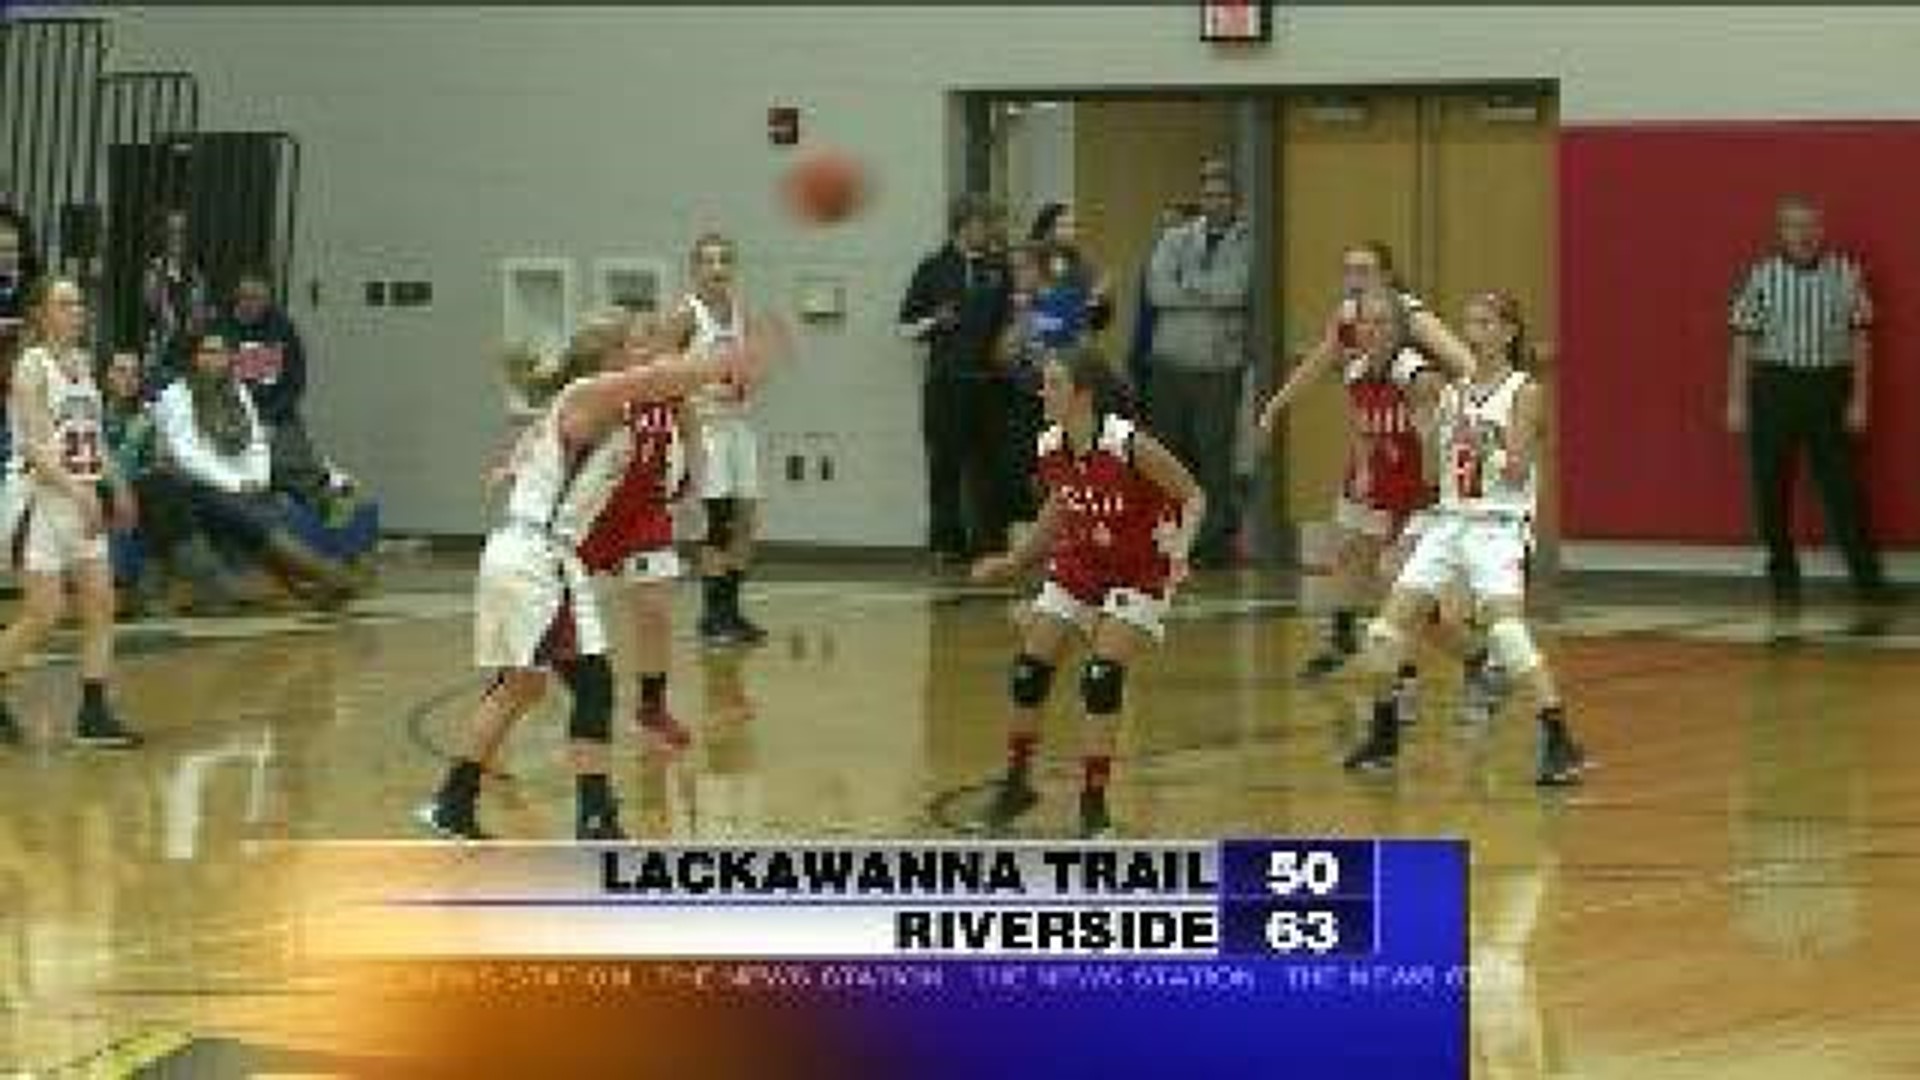 Riverside vs Lackawanna Trail